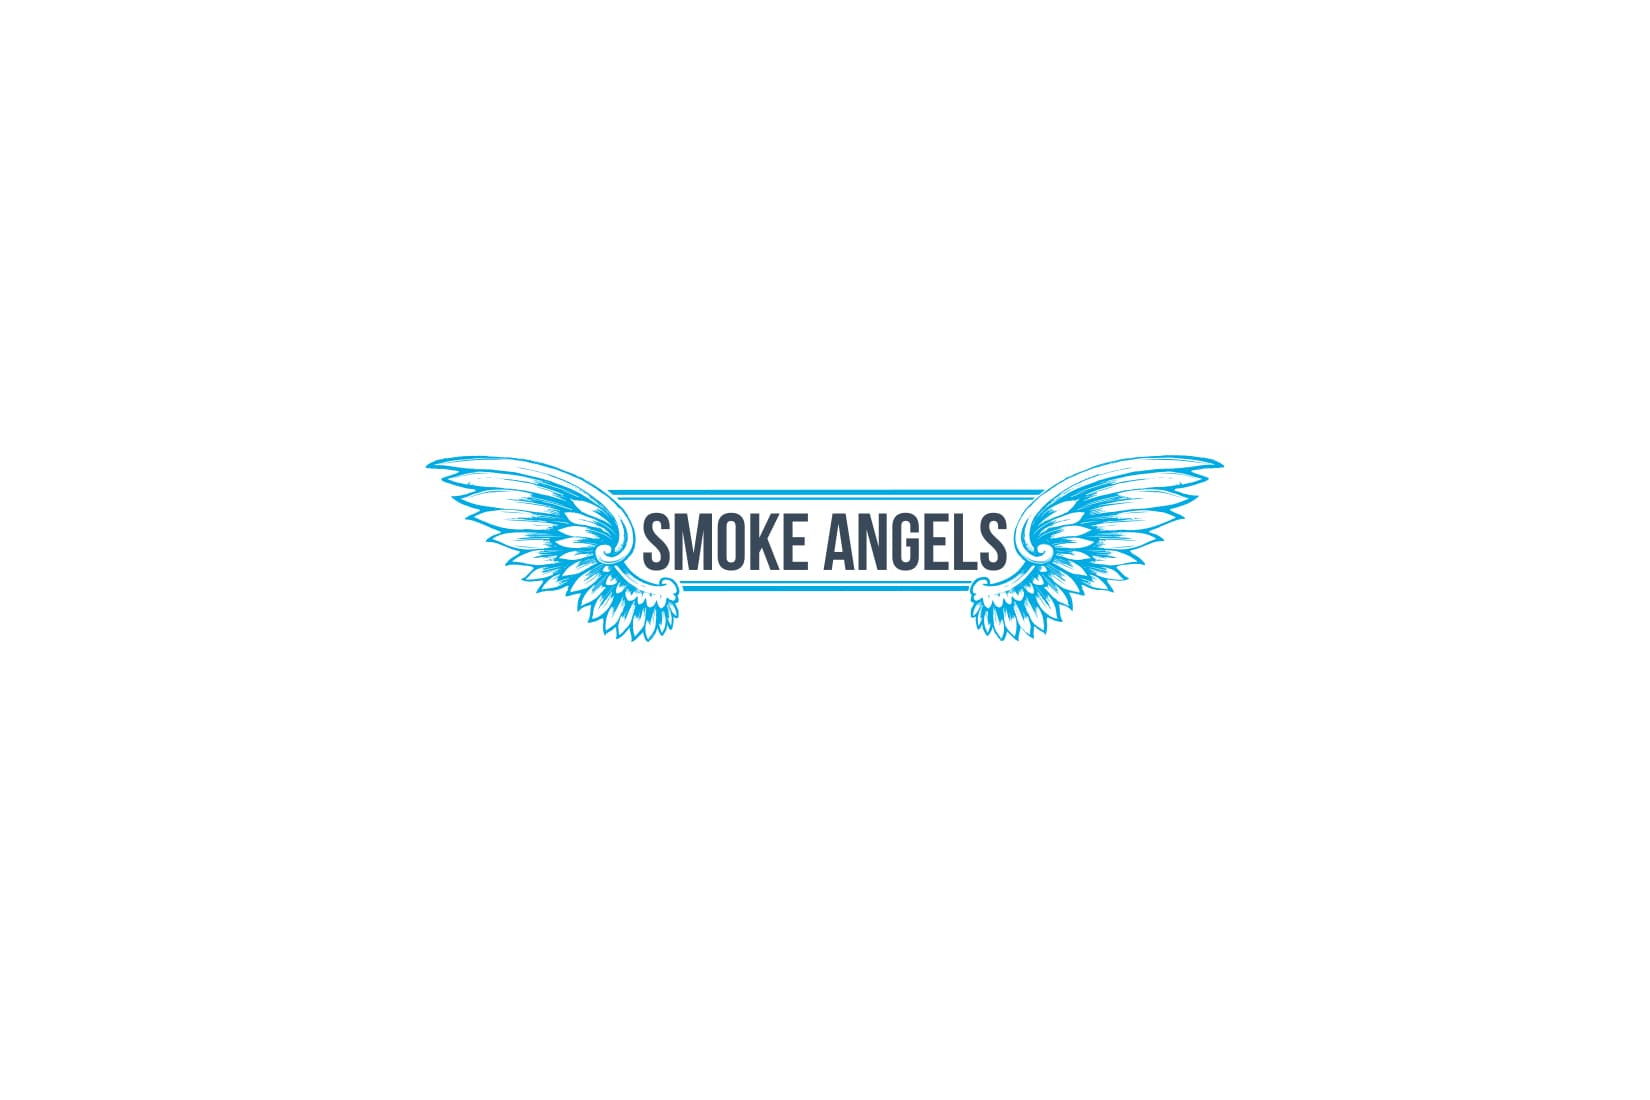 Табак для кальяна Smoke Angels: описание, вкусы, миксы, отзывы